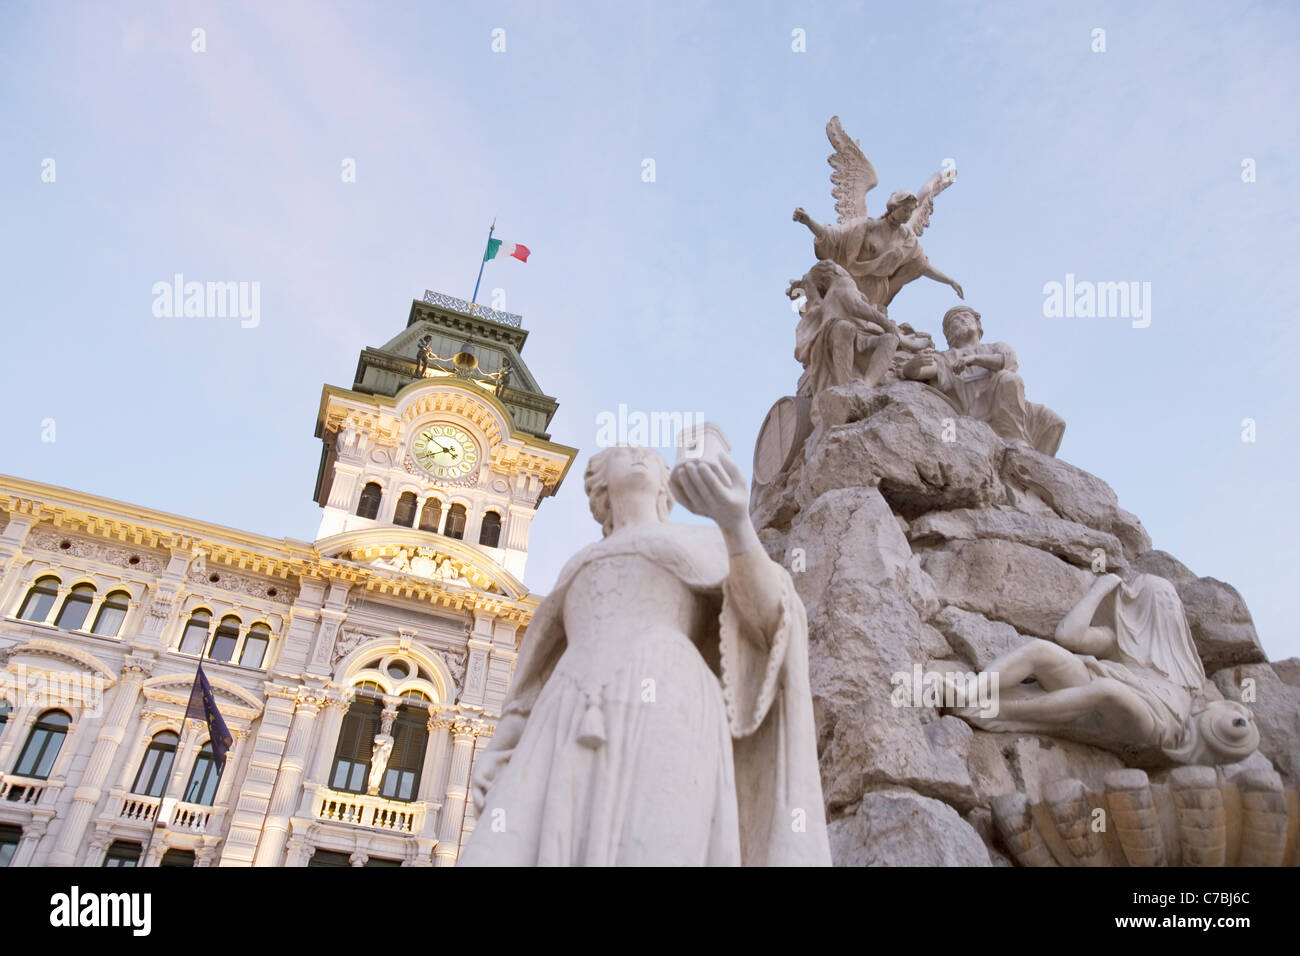 Fountain in front of Town Hall at Piazza dell'Unita d'Italia Square, Trieste, Friuli-Venezia Giulia, Italy Stock Photo